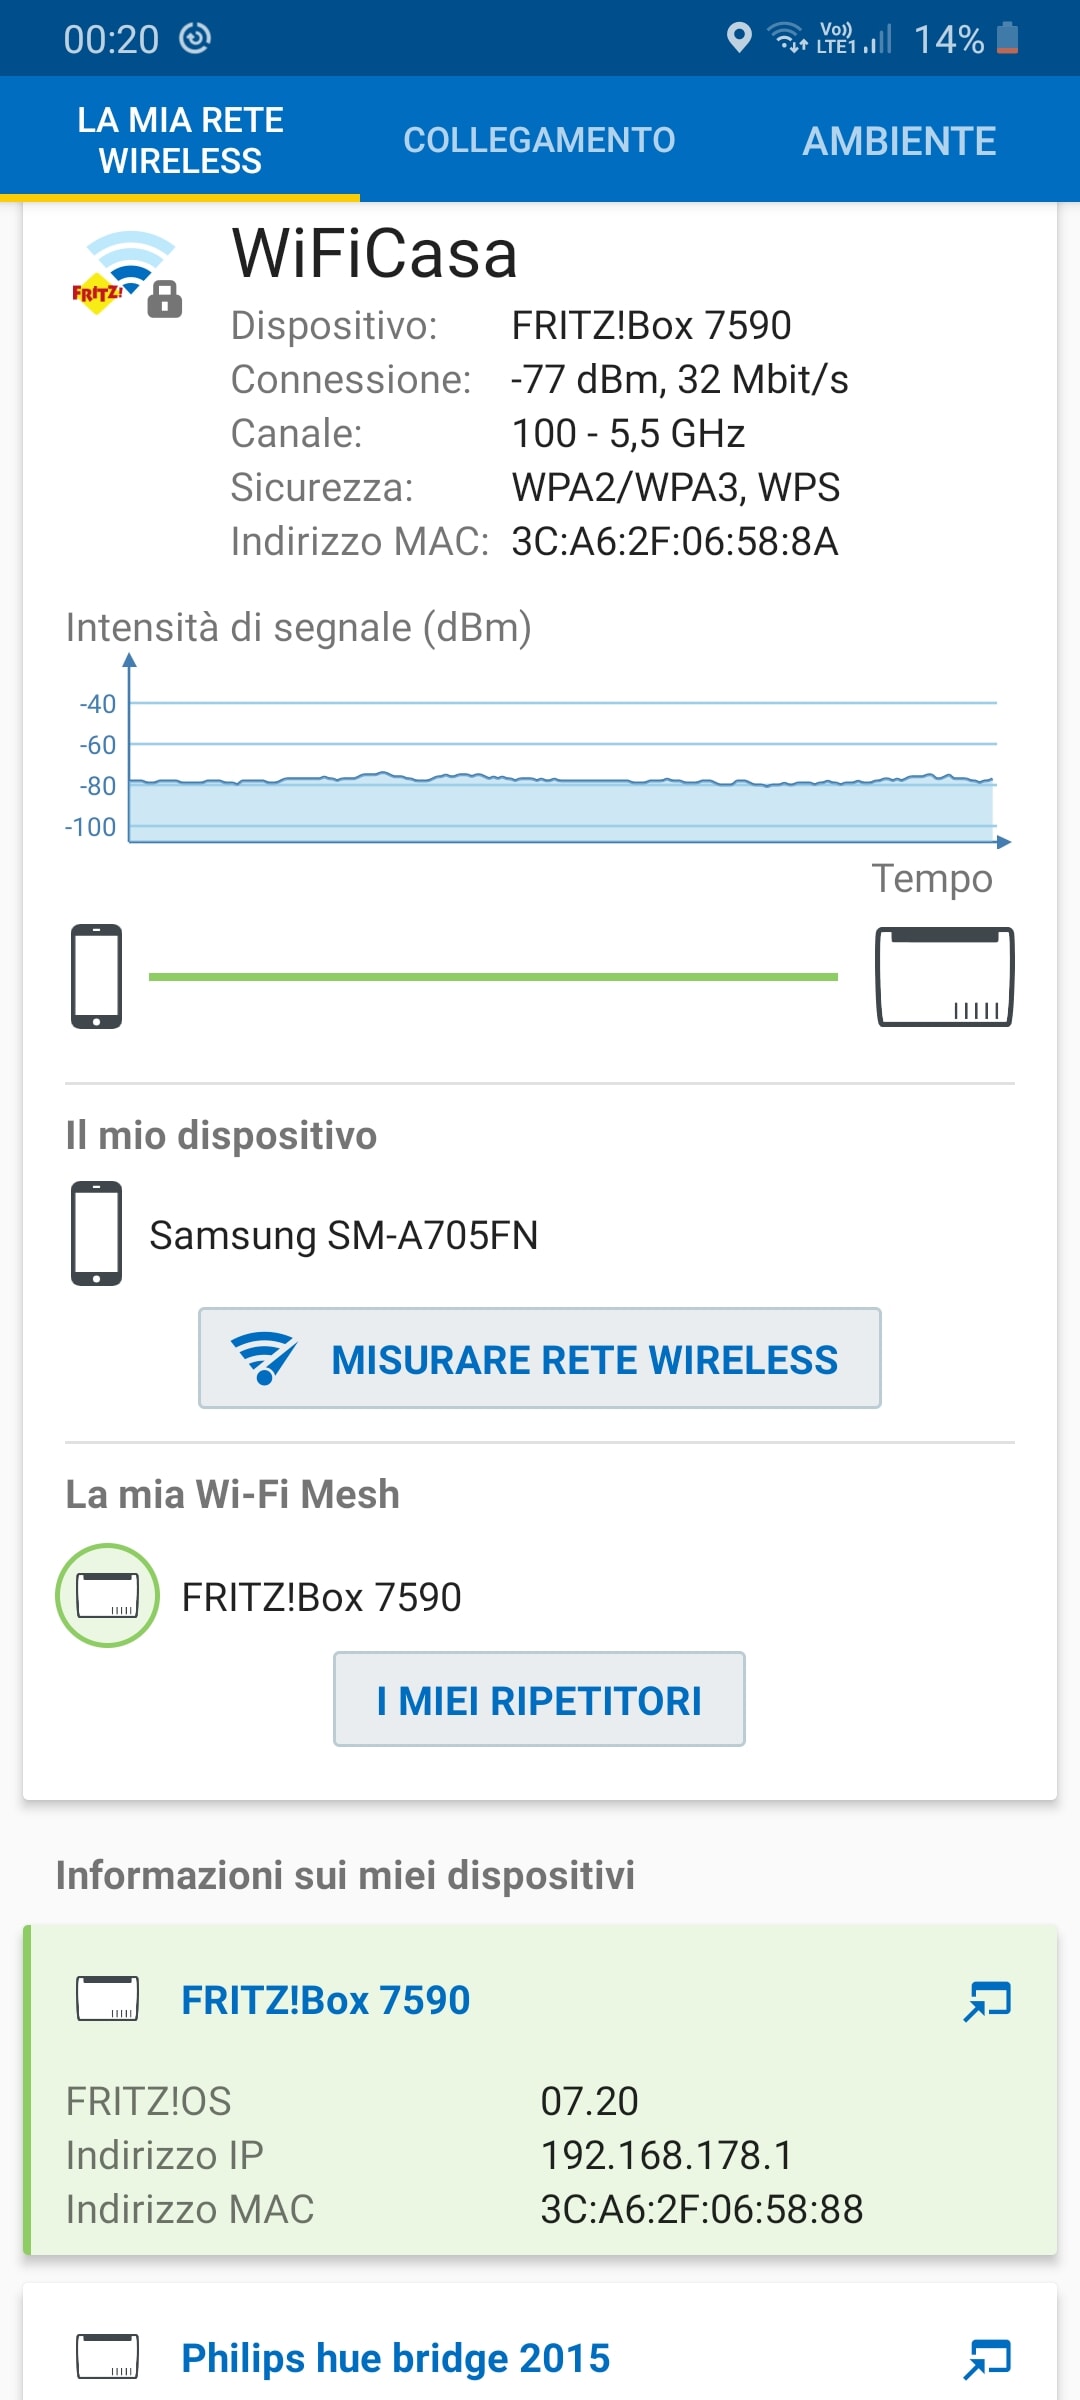 TIM Hub plus: test copertura Wi-Fi e prestazioni con FTTC rispetto al  Fritzbox 7590! 